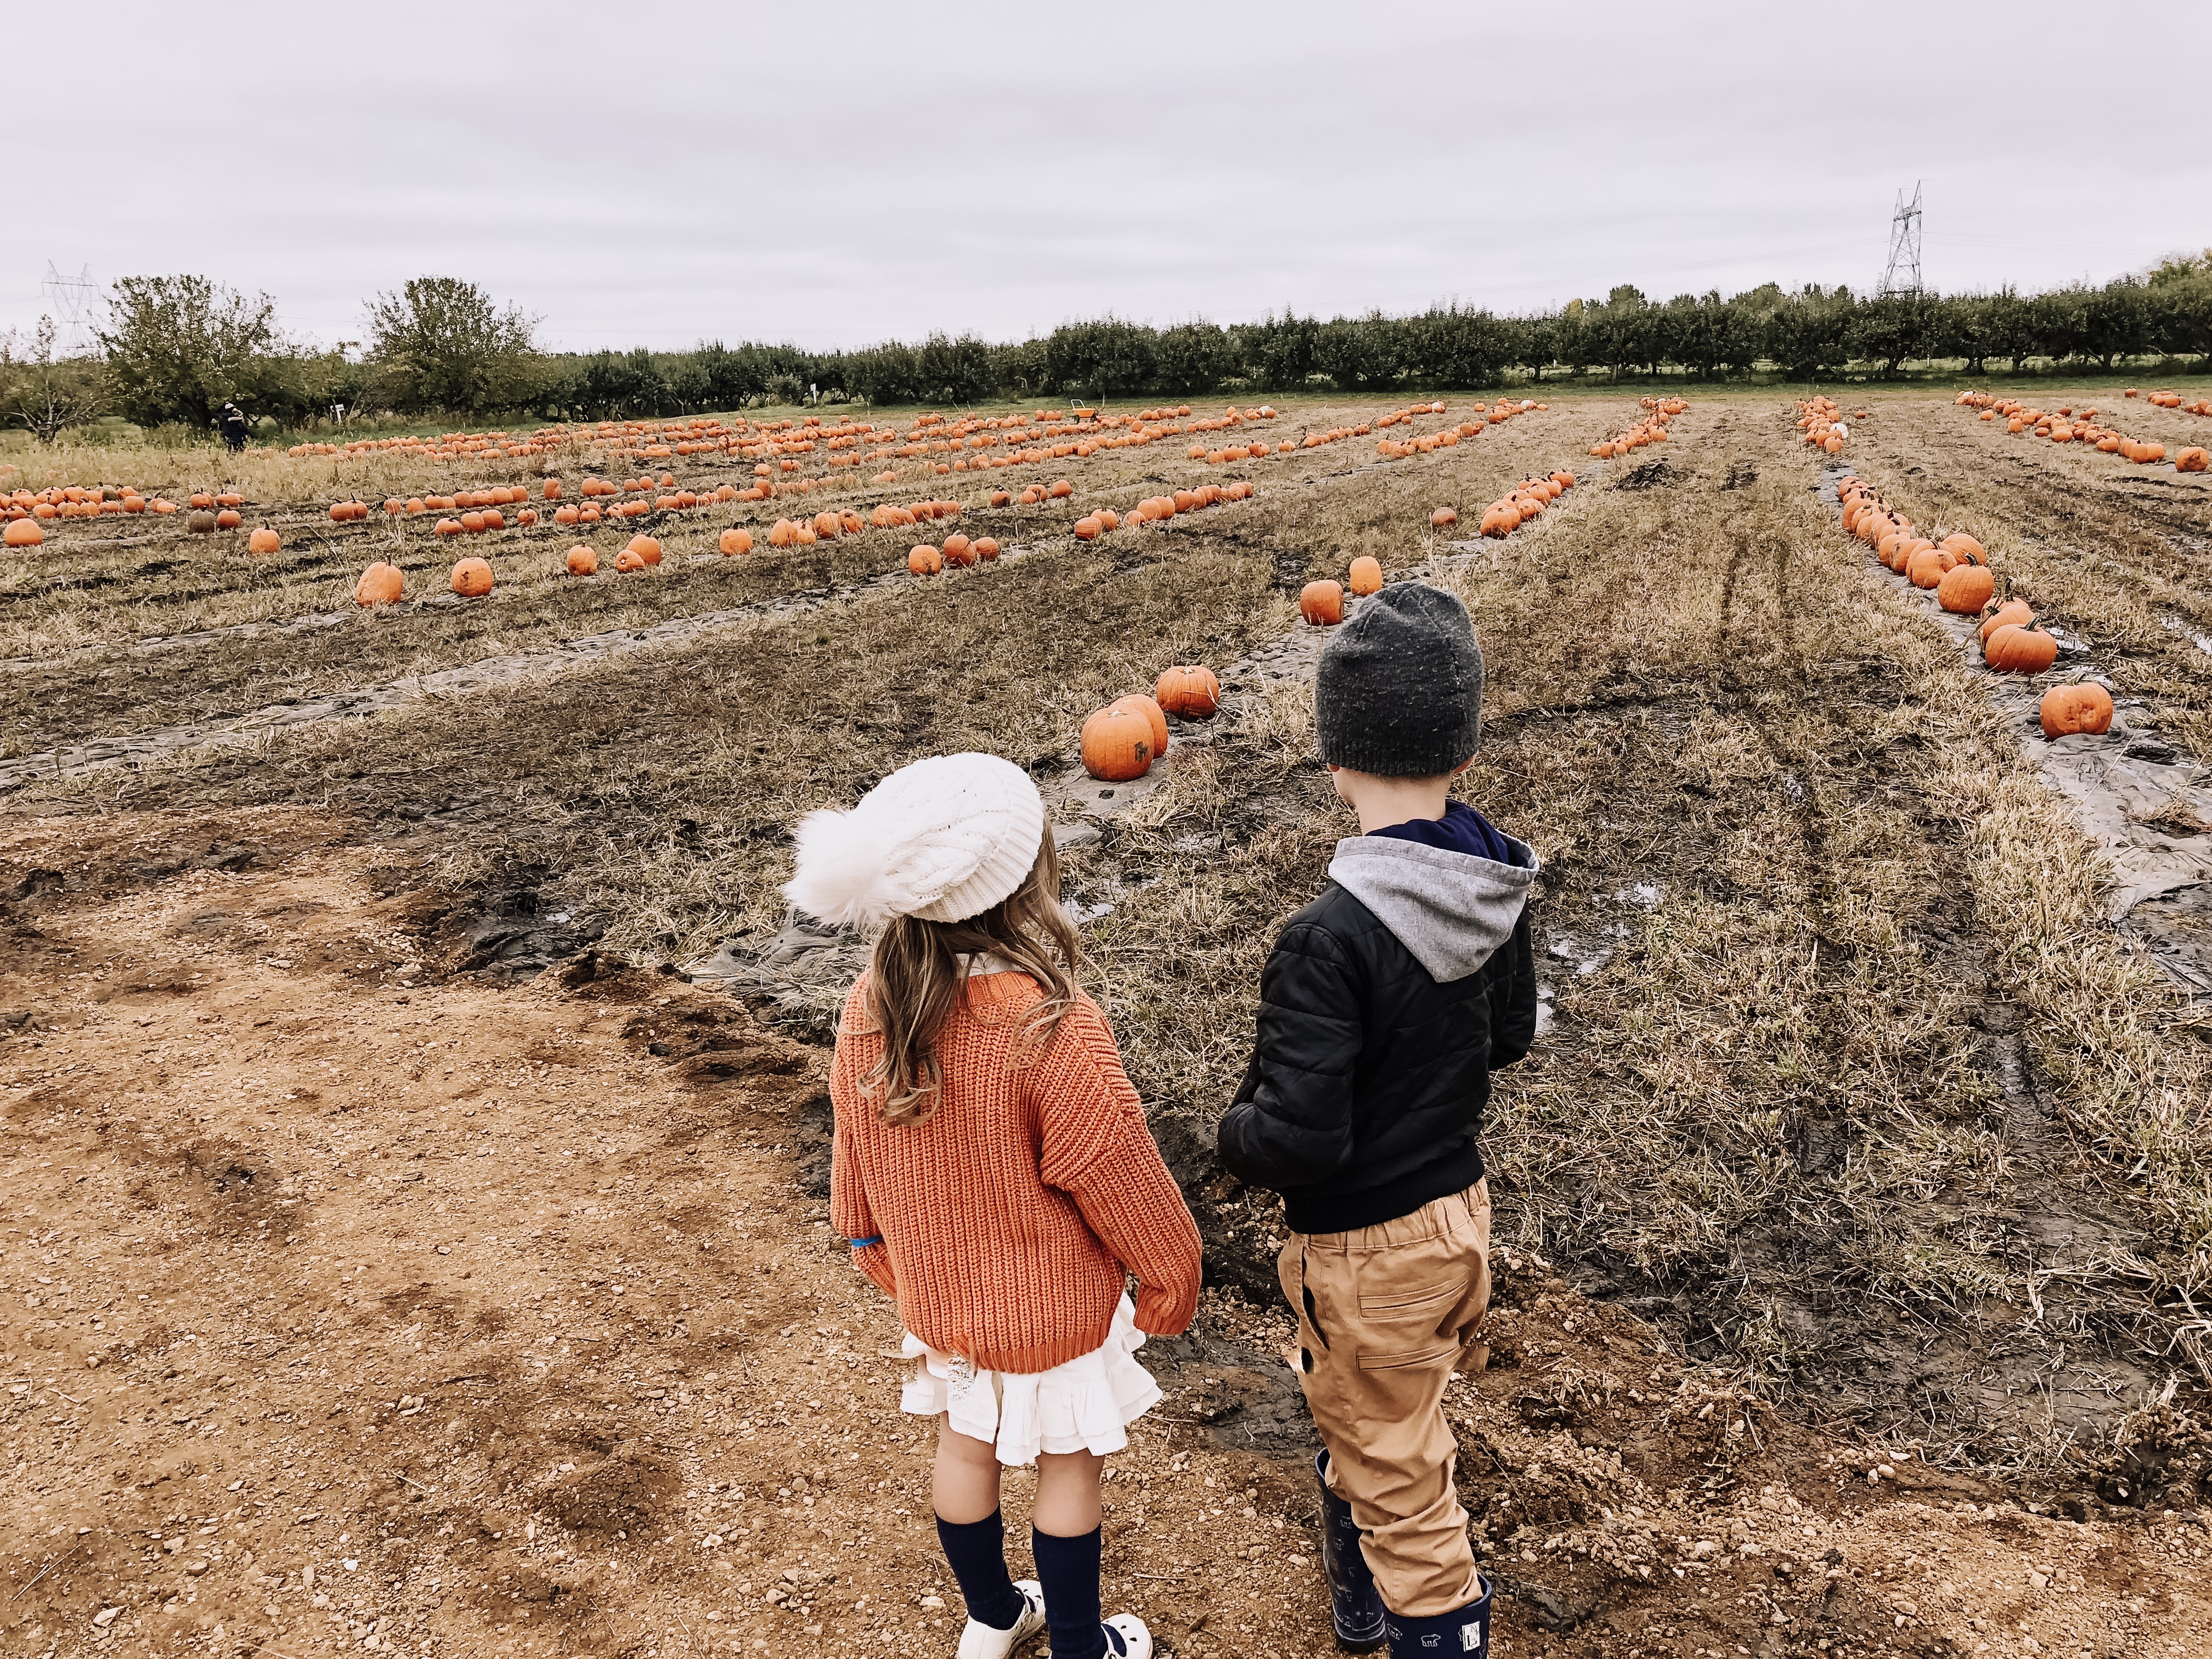 pumpkin patch fall fun with kids | thelovedesignedlife.com #fallfun #pumkinpatch #wheretogoinsouthdakota #fallfun